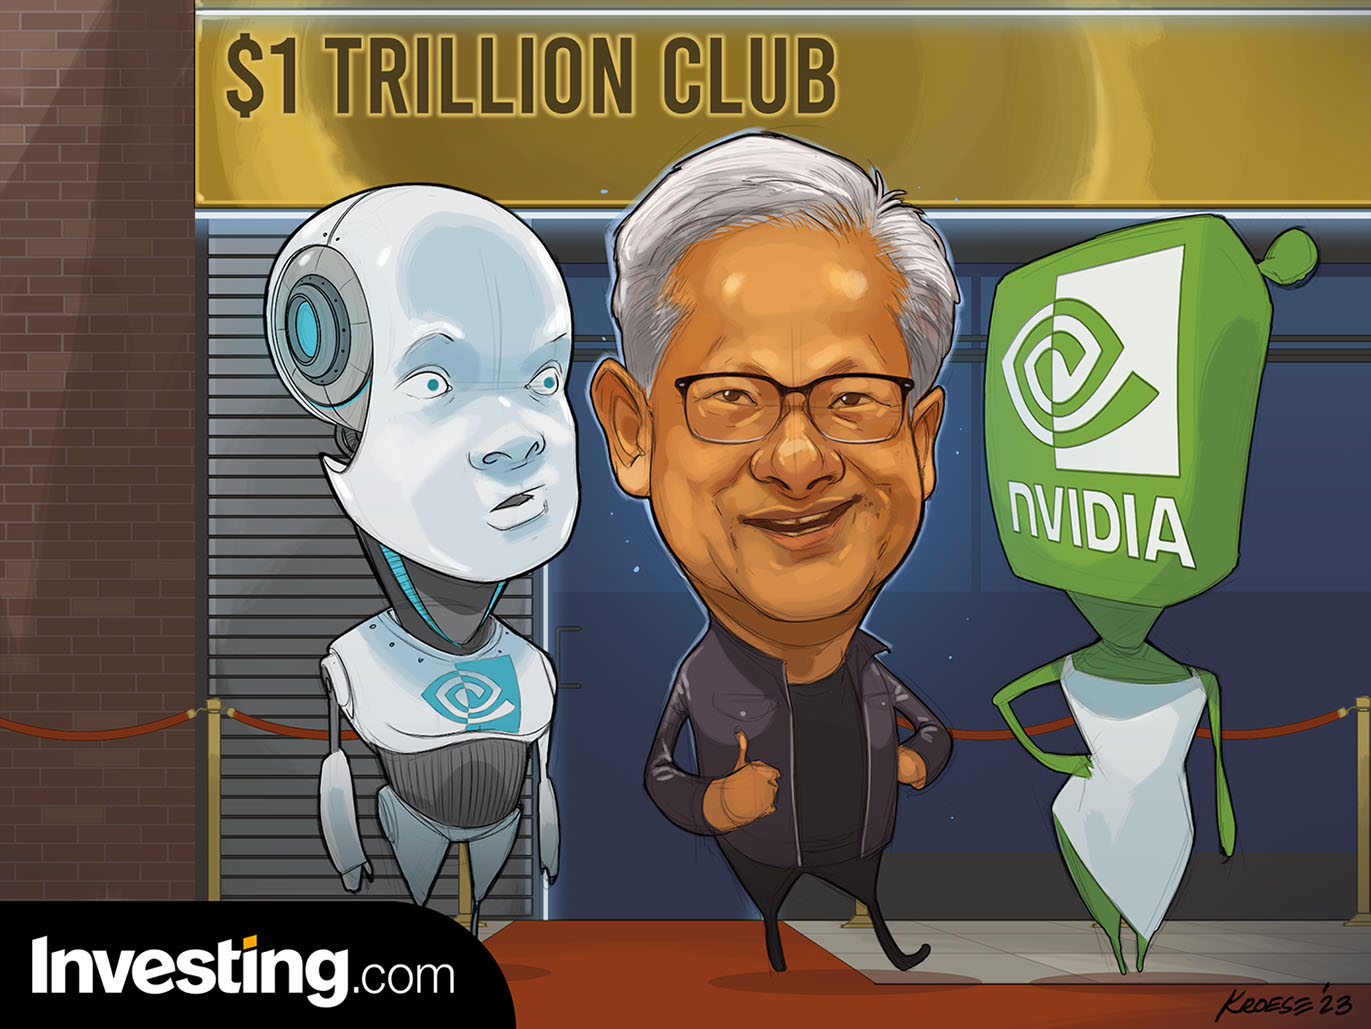 Nvidia tham gia câu lạc bộ vốn hóa nghìn tỷ Đô. Tiếp theo sẽ là công ty nào?